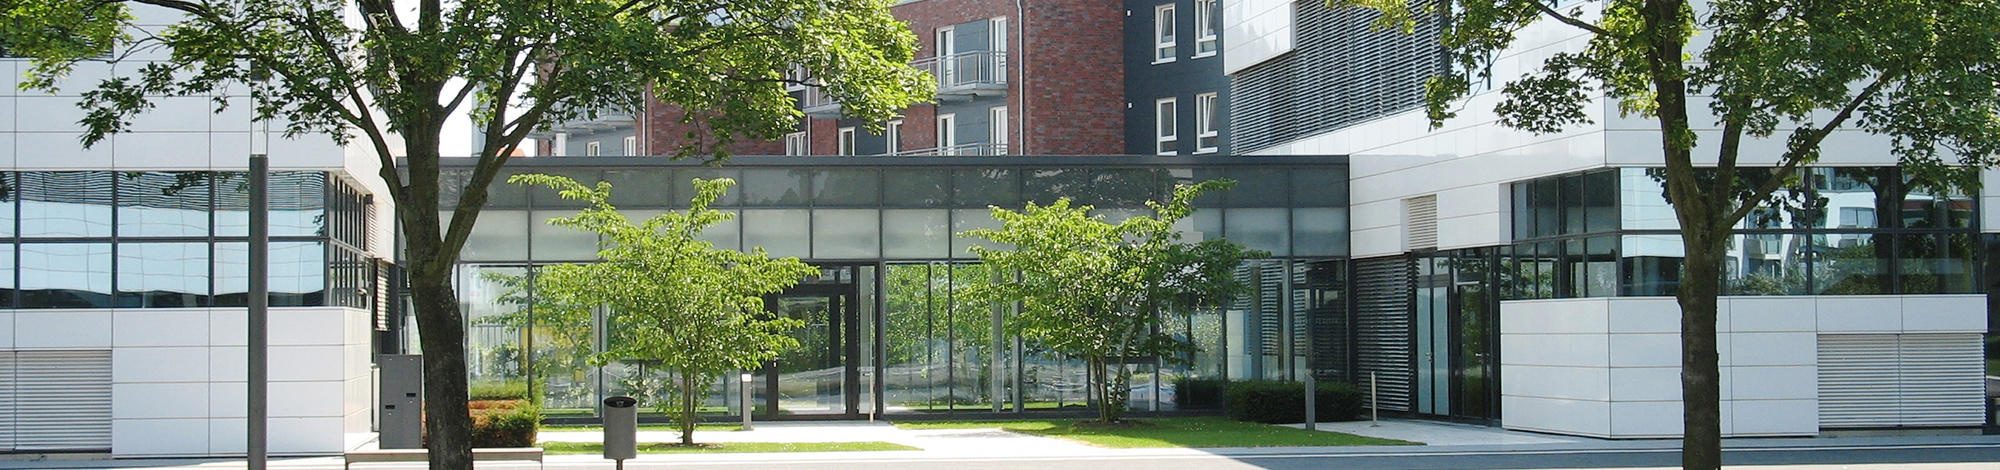 Hogeschool Rhein-Waal, Kleef